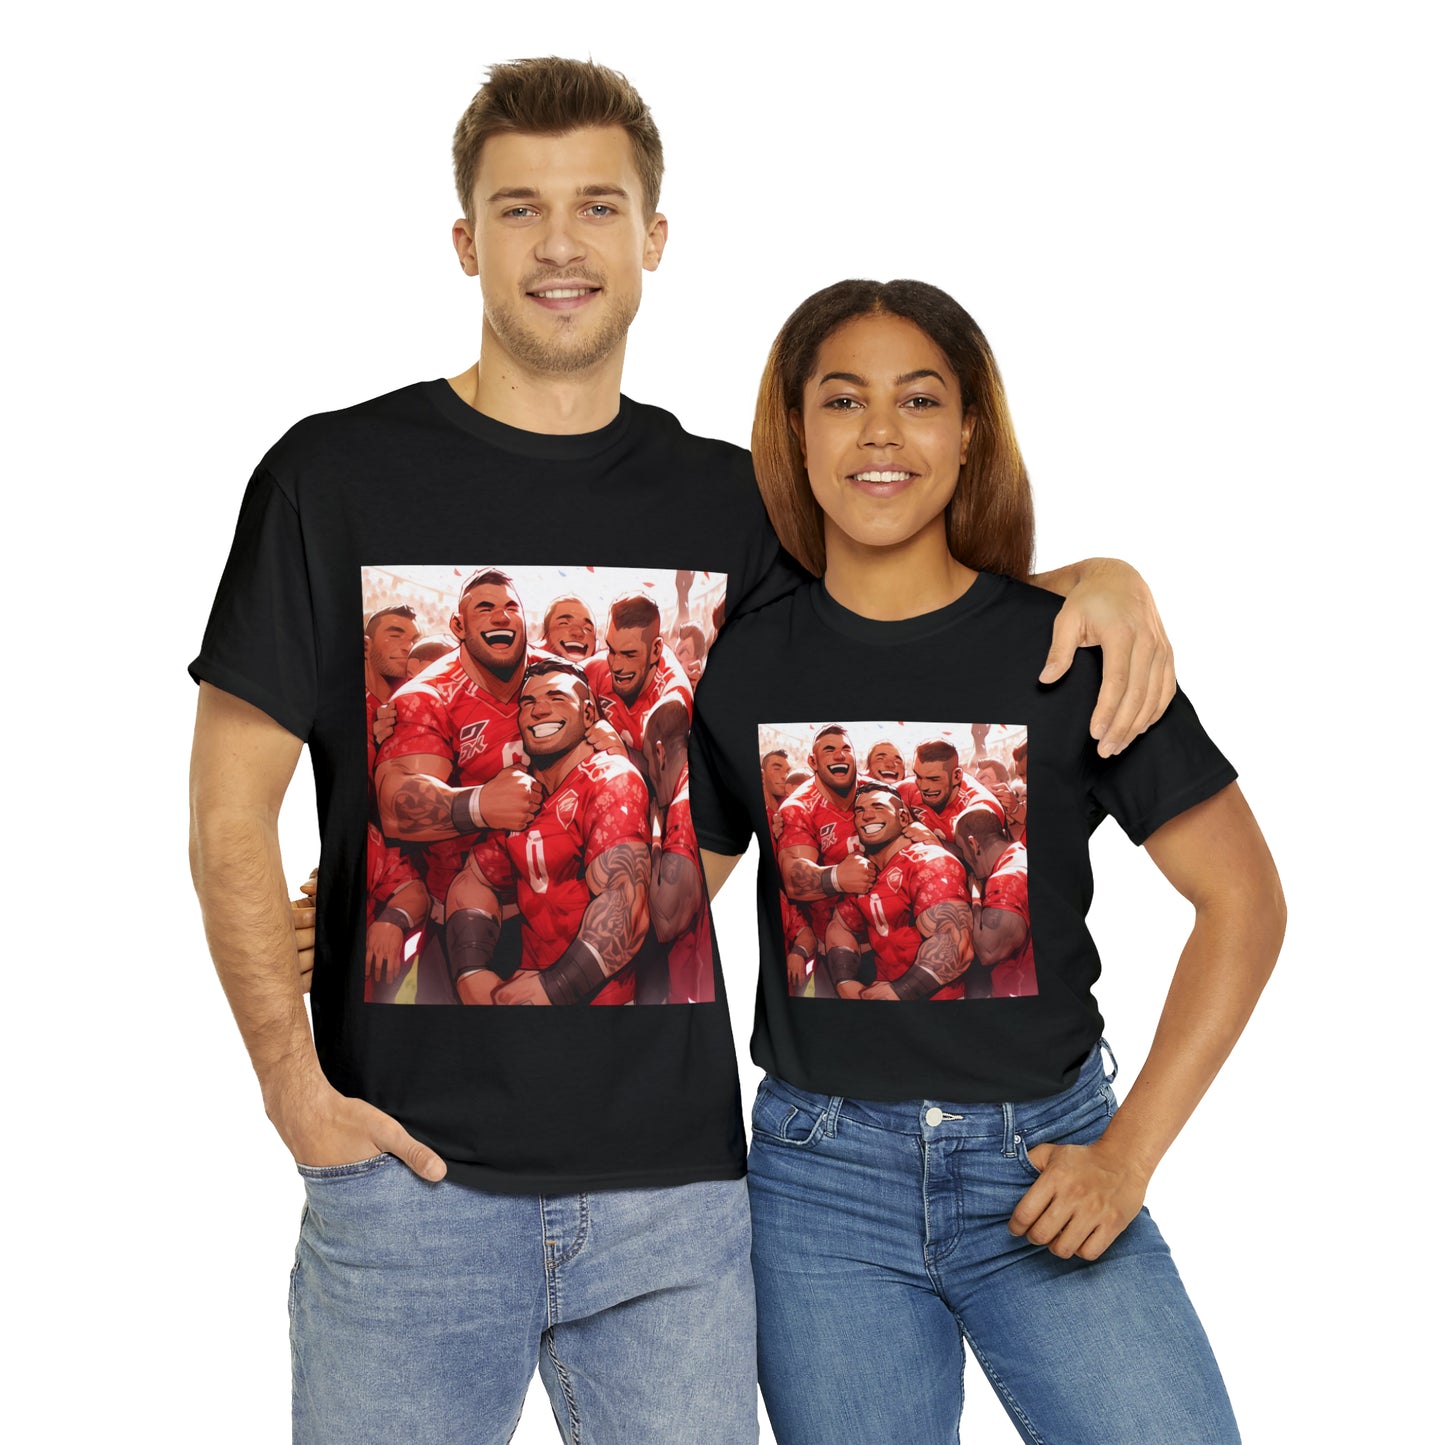 Happy Tonga - dark shirts